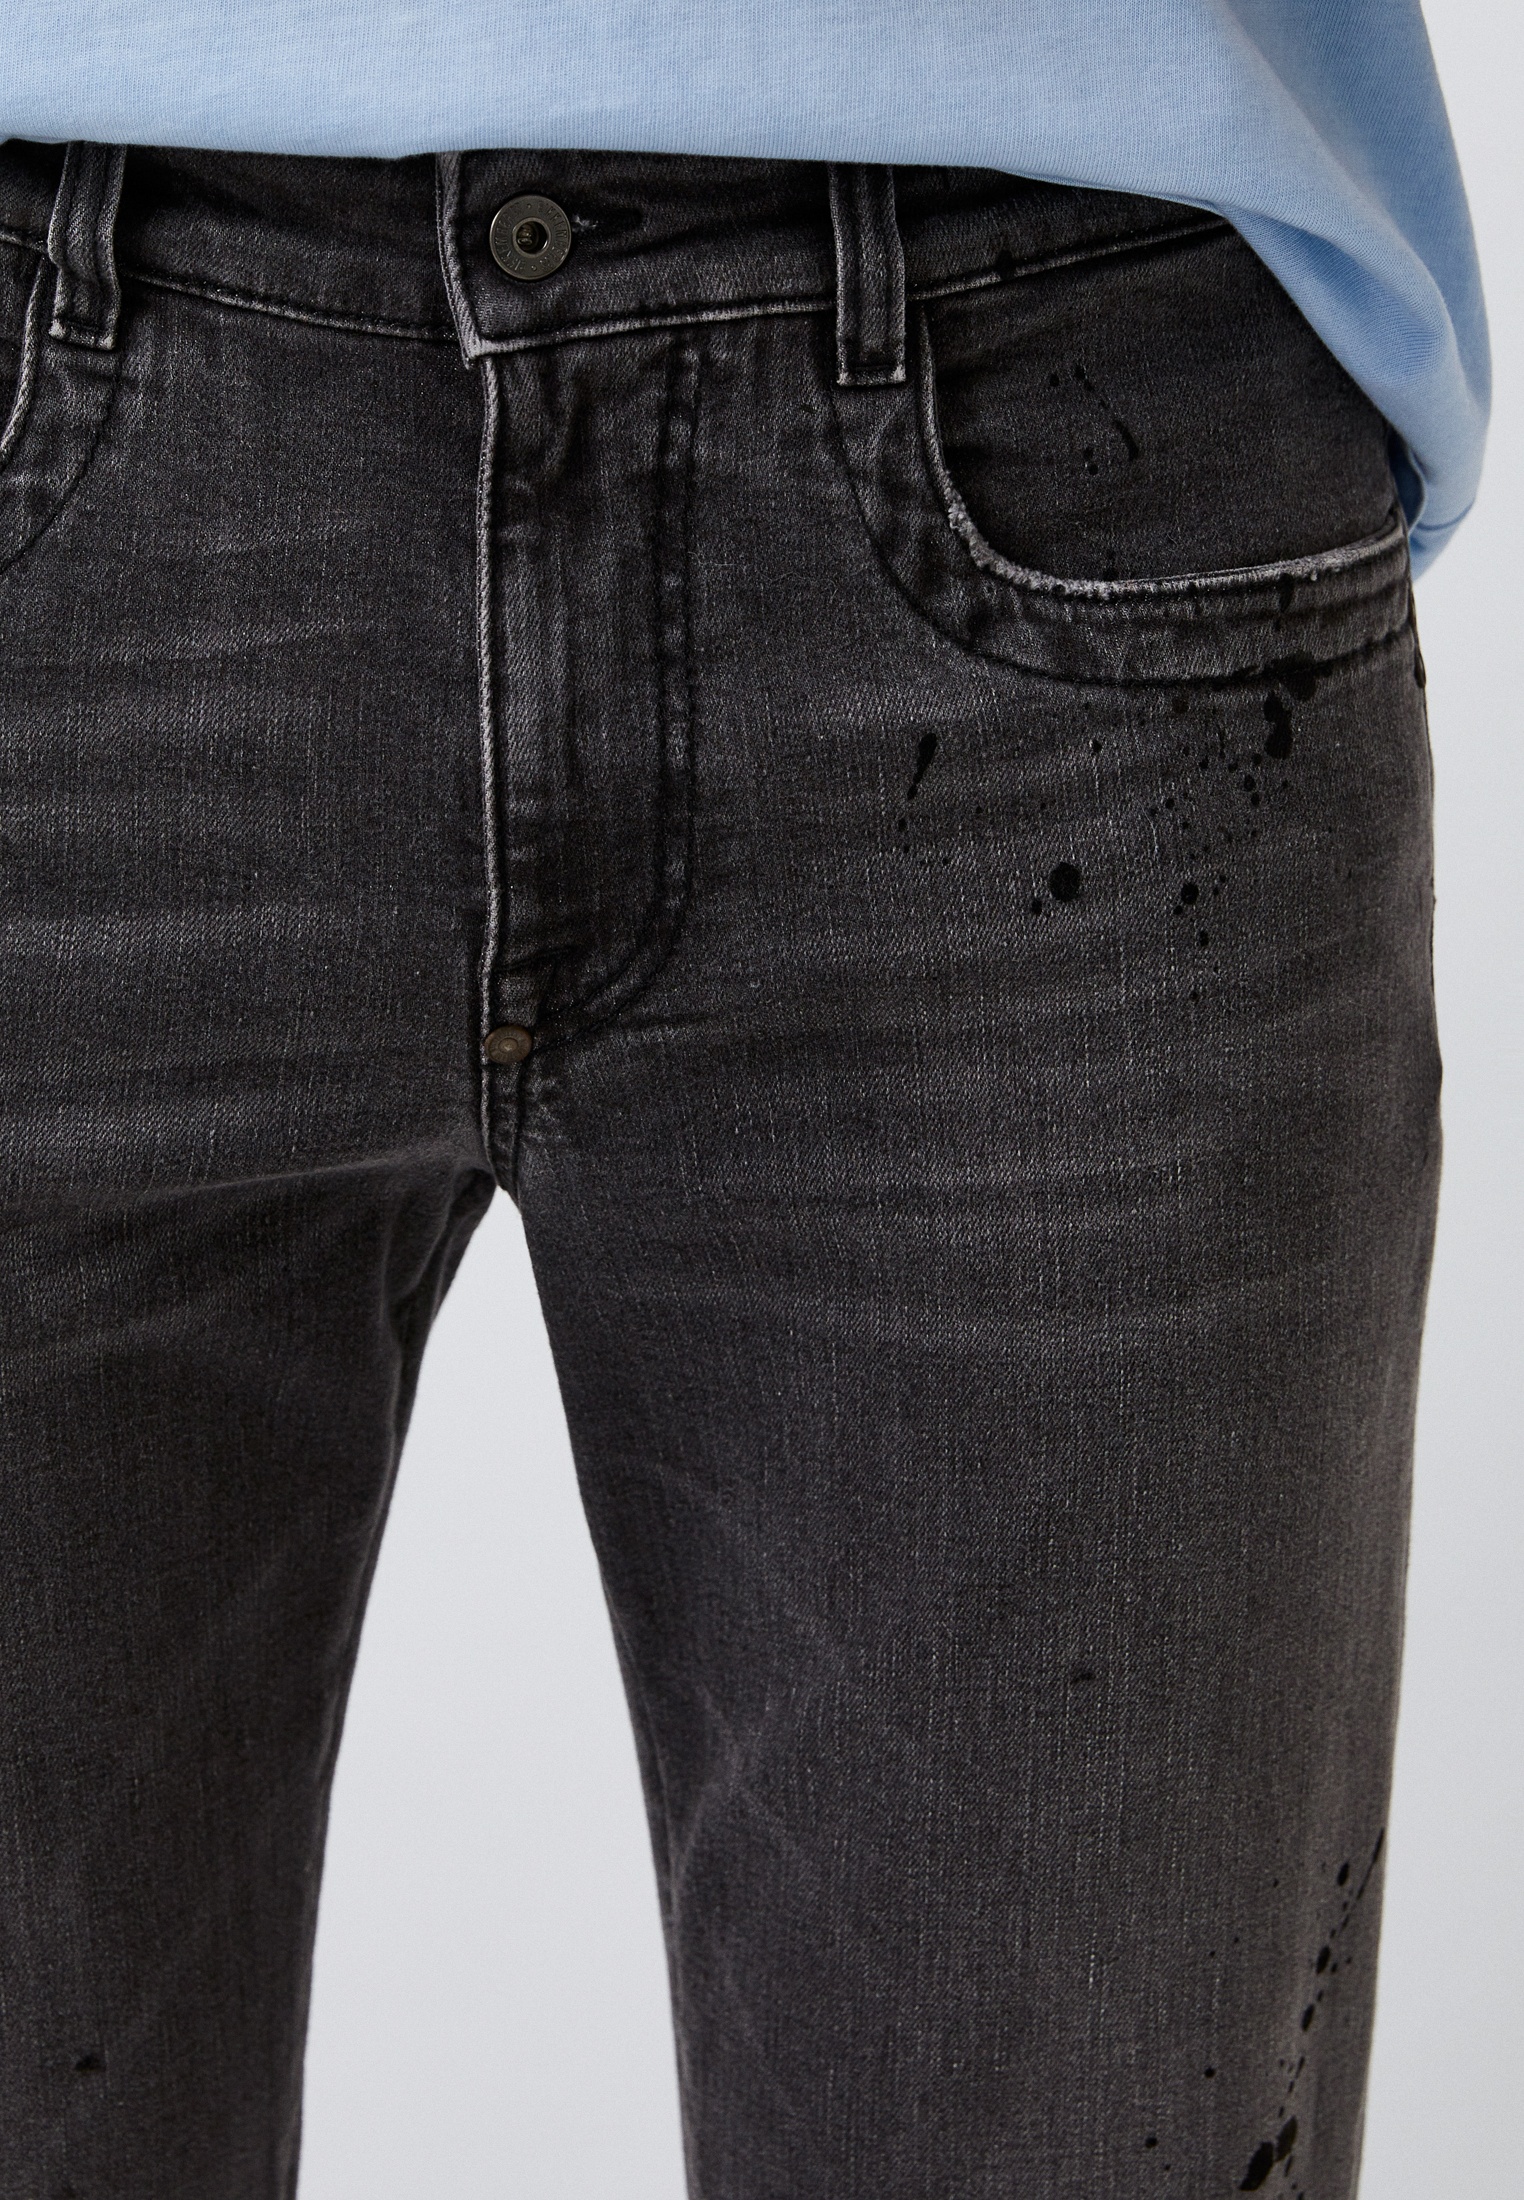 Мужские зауженные джинсы Bikkembergs (Биккембергс) C Q 101 1G S 3855: изображение 4